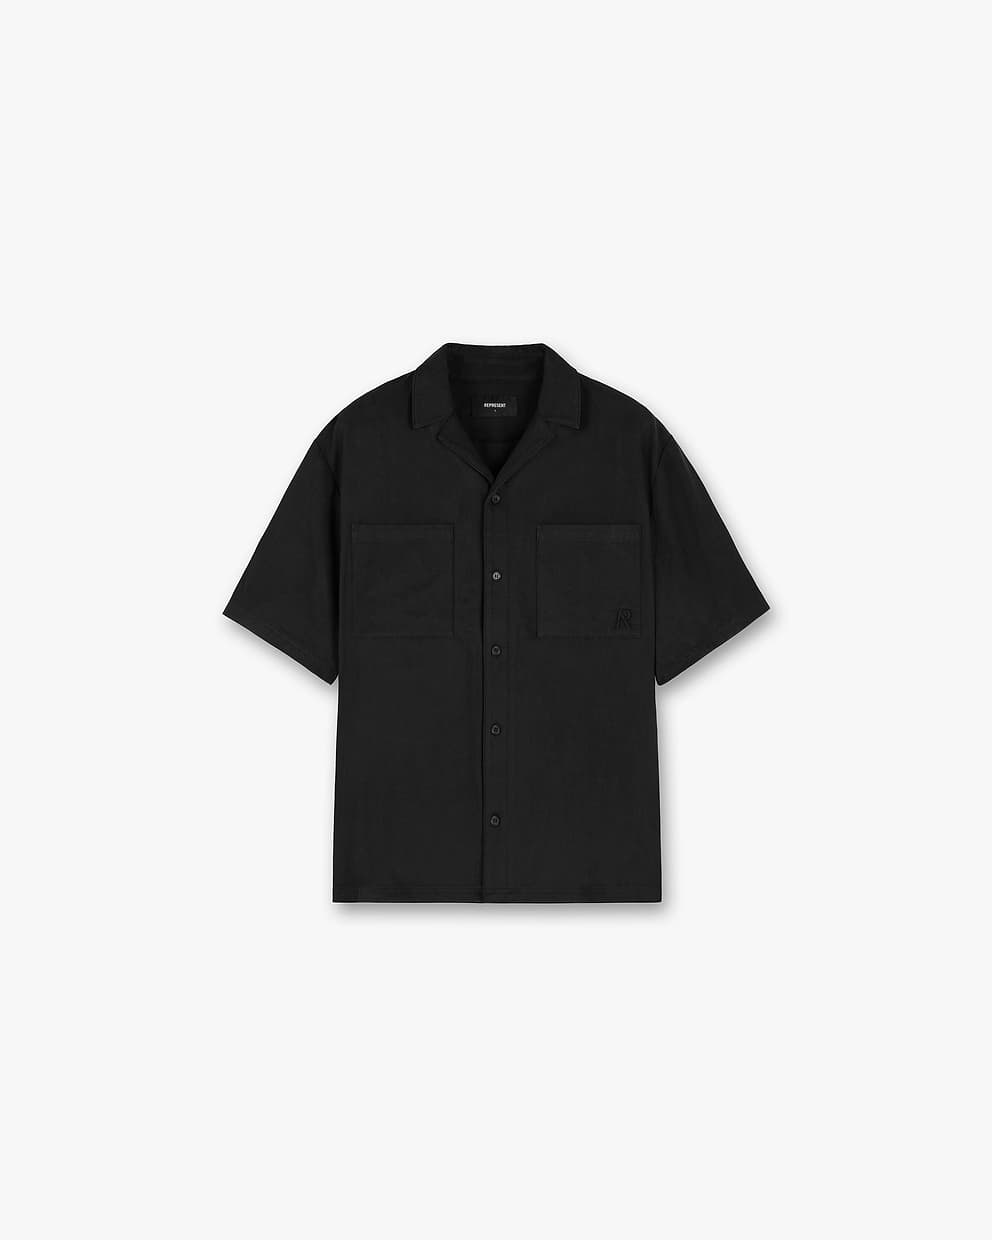 Yacht Shirt - Black